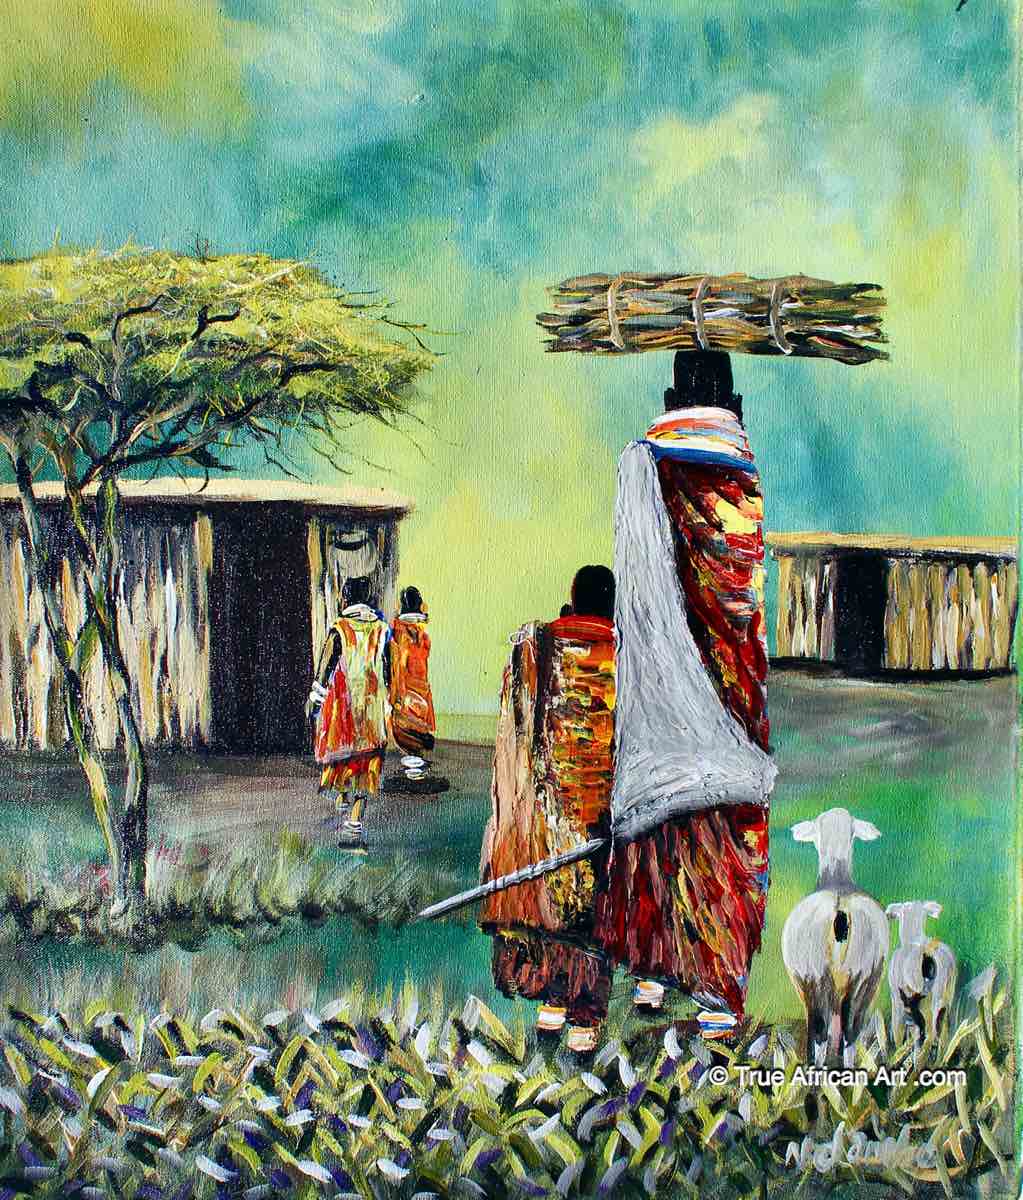 John Ndambo  |  Kenya  |  Maasai  |  N-217  |  True African Art .com